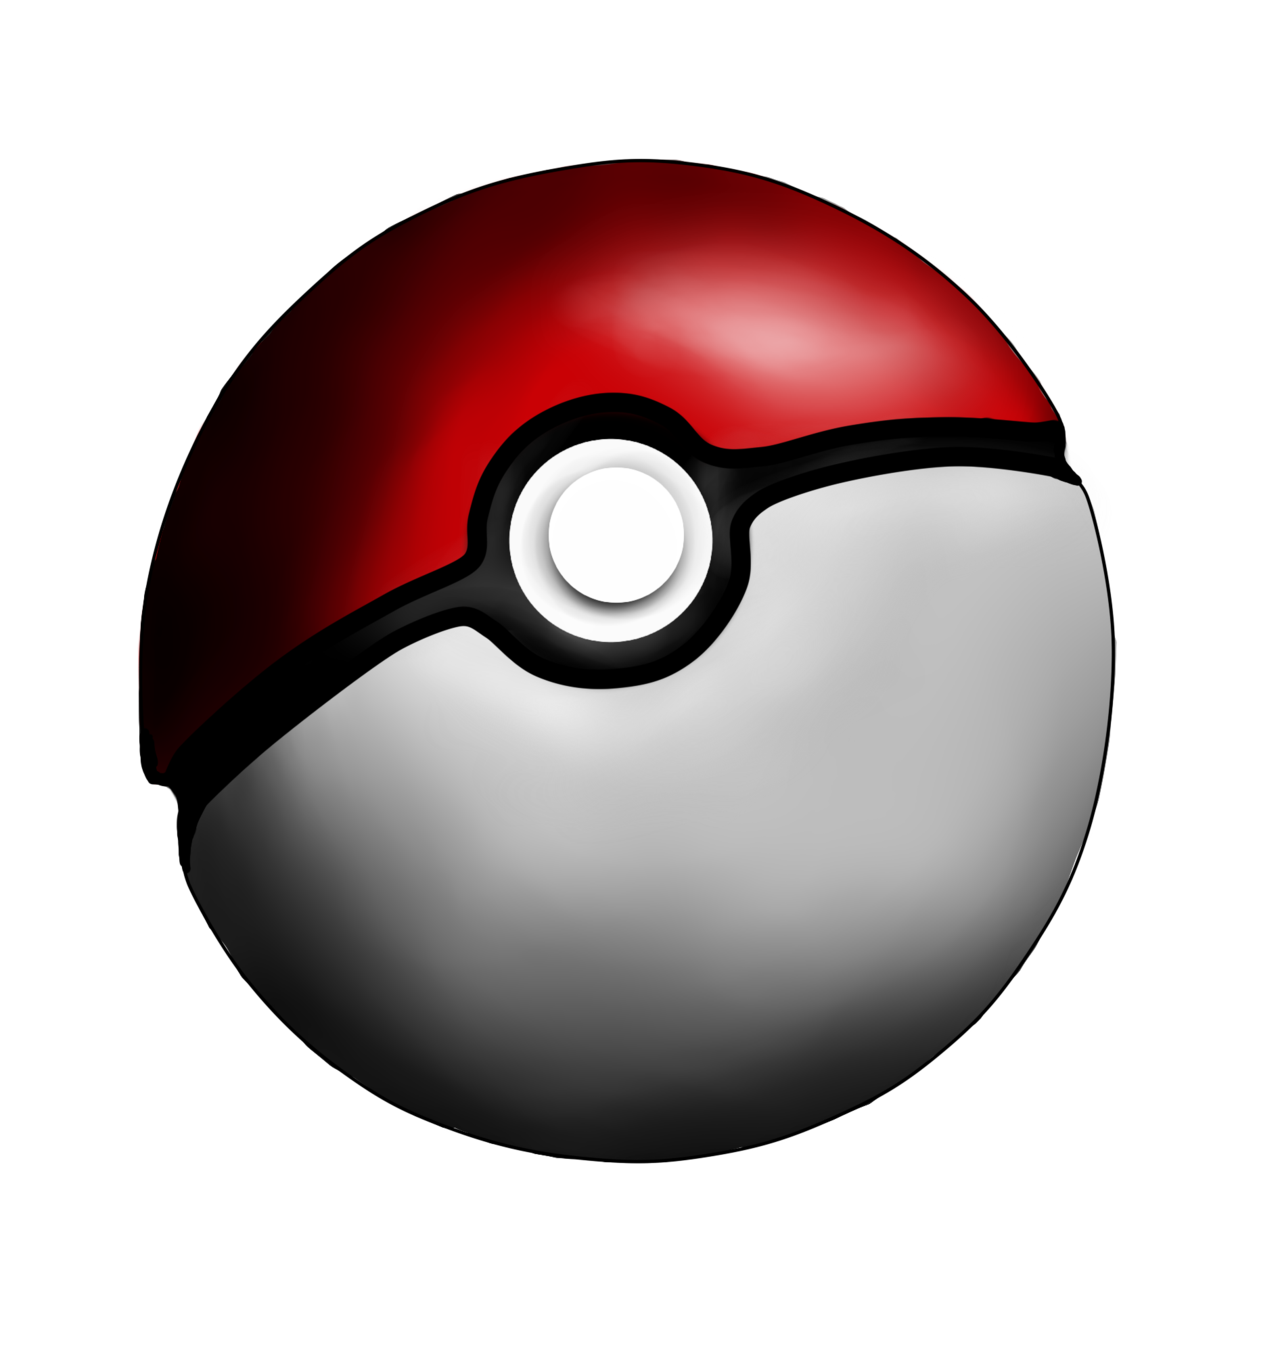 Pikachu Poké Ball Pokémon PNG - Free Download in 2023